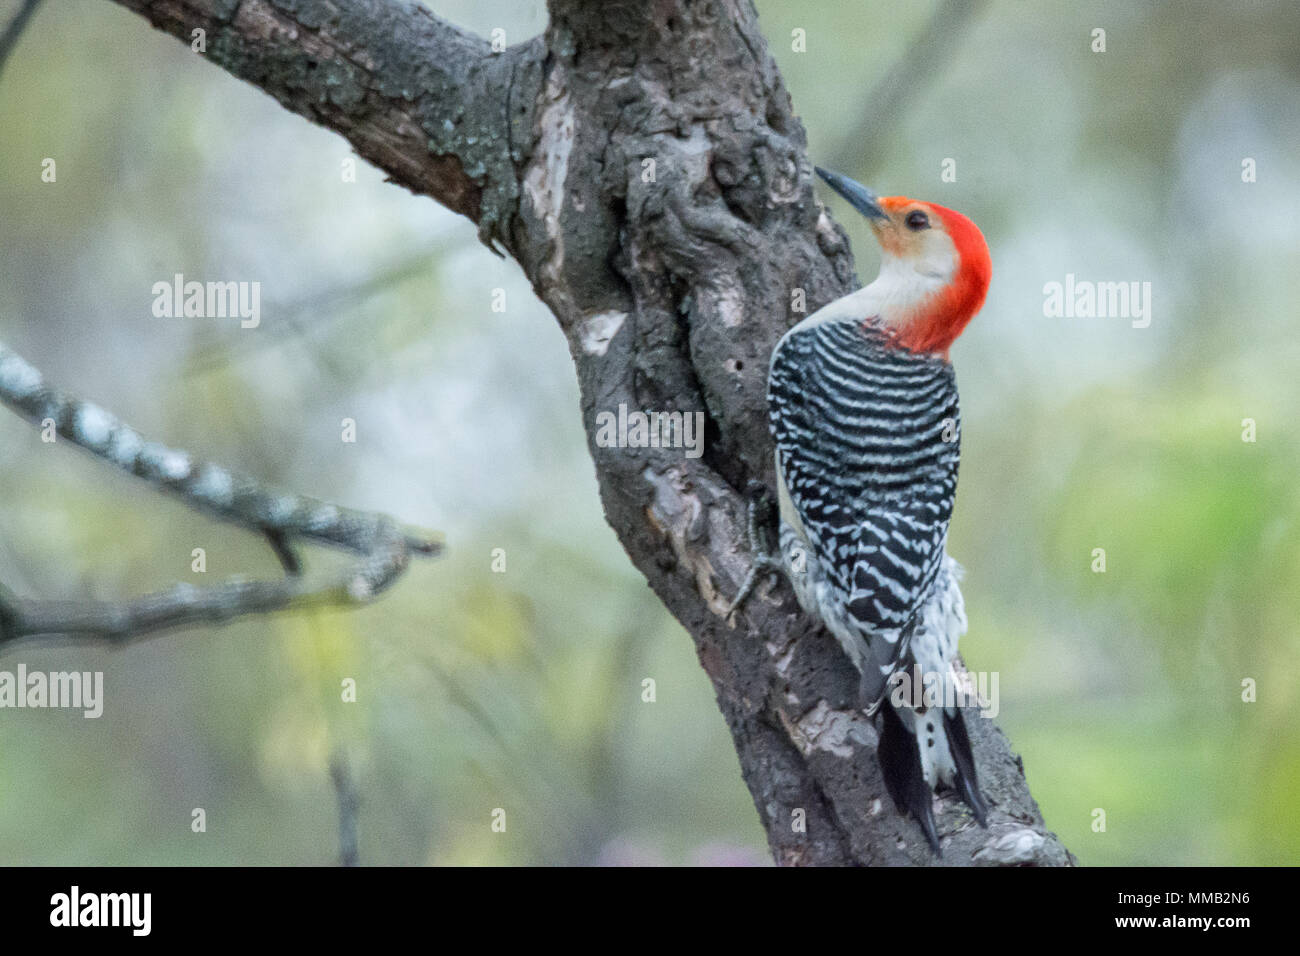 Nahaufnahme Foto von einem Red-bellied Woodpecker Vogel auf einem Baum gehockt. Stockfoto